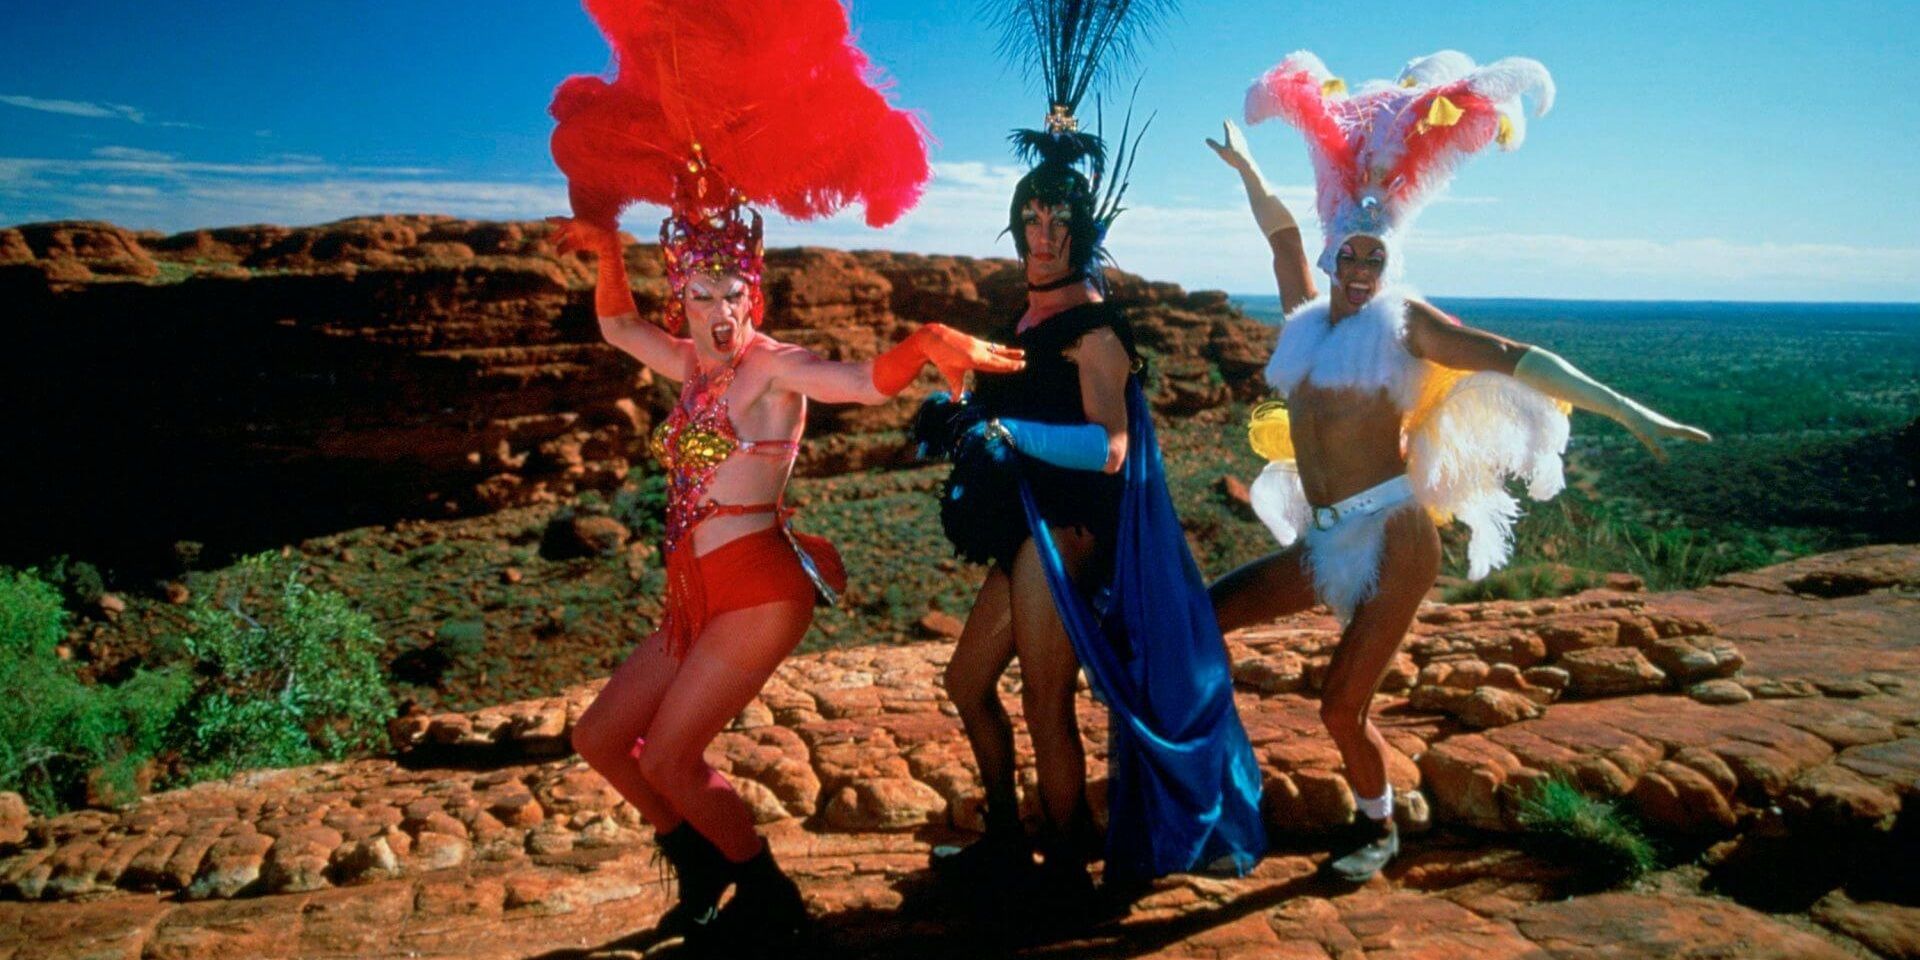 Mitzi, Bernadette, and Felicia posing in the desert in The Adventures of Priscilla Queen of the Desert